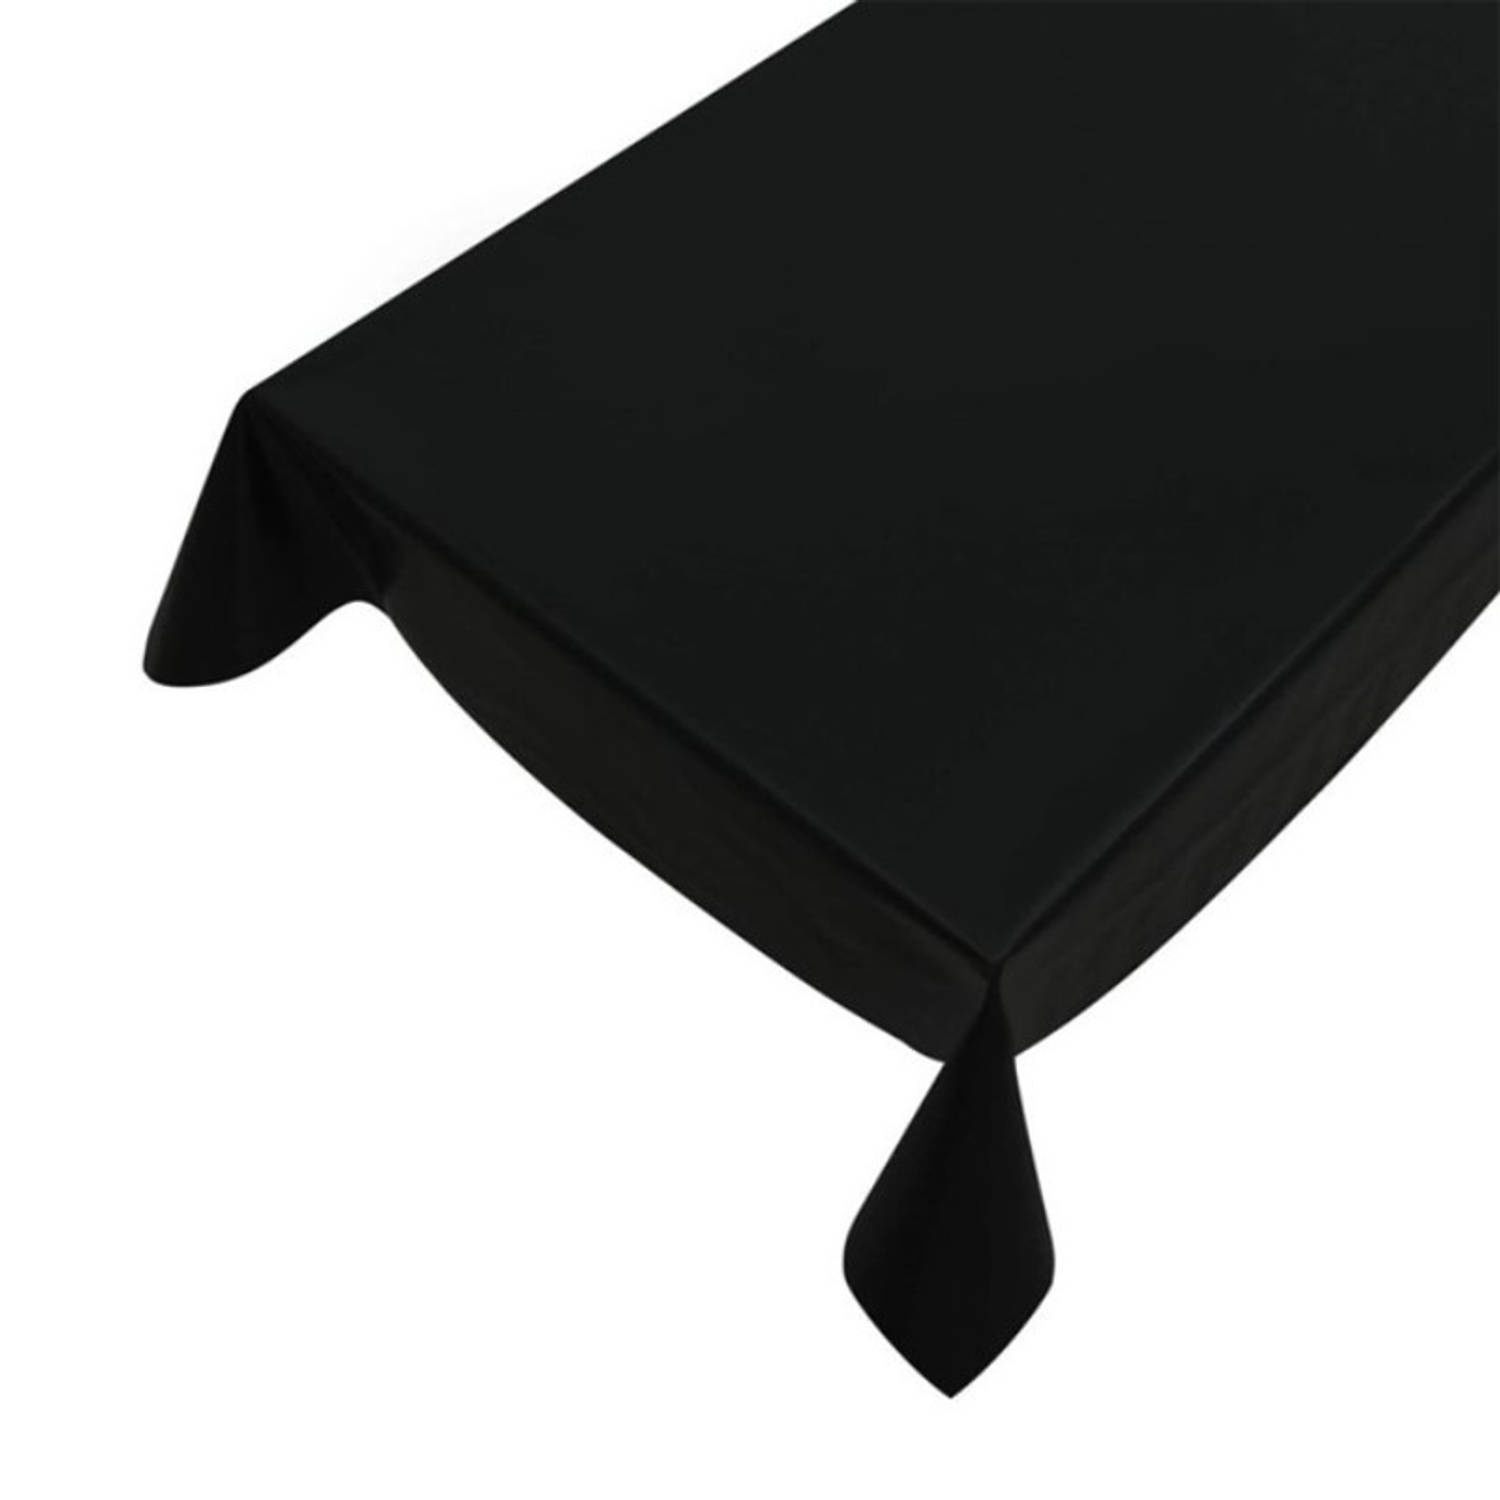 Worden Speels voor Tafelzeil/tafelkleed zwart 140 x 245 cm - Tafelzeilen | Blokker